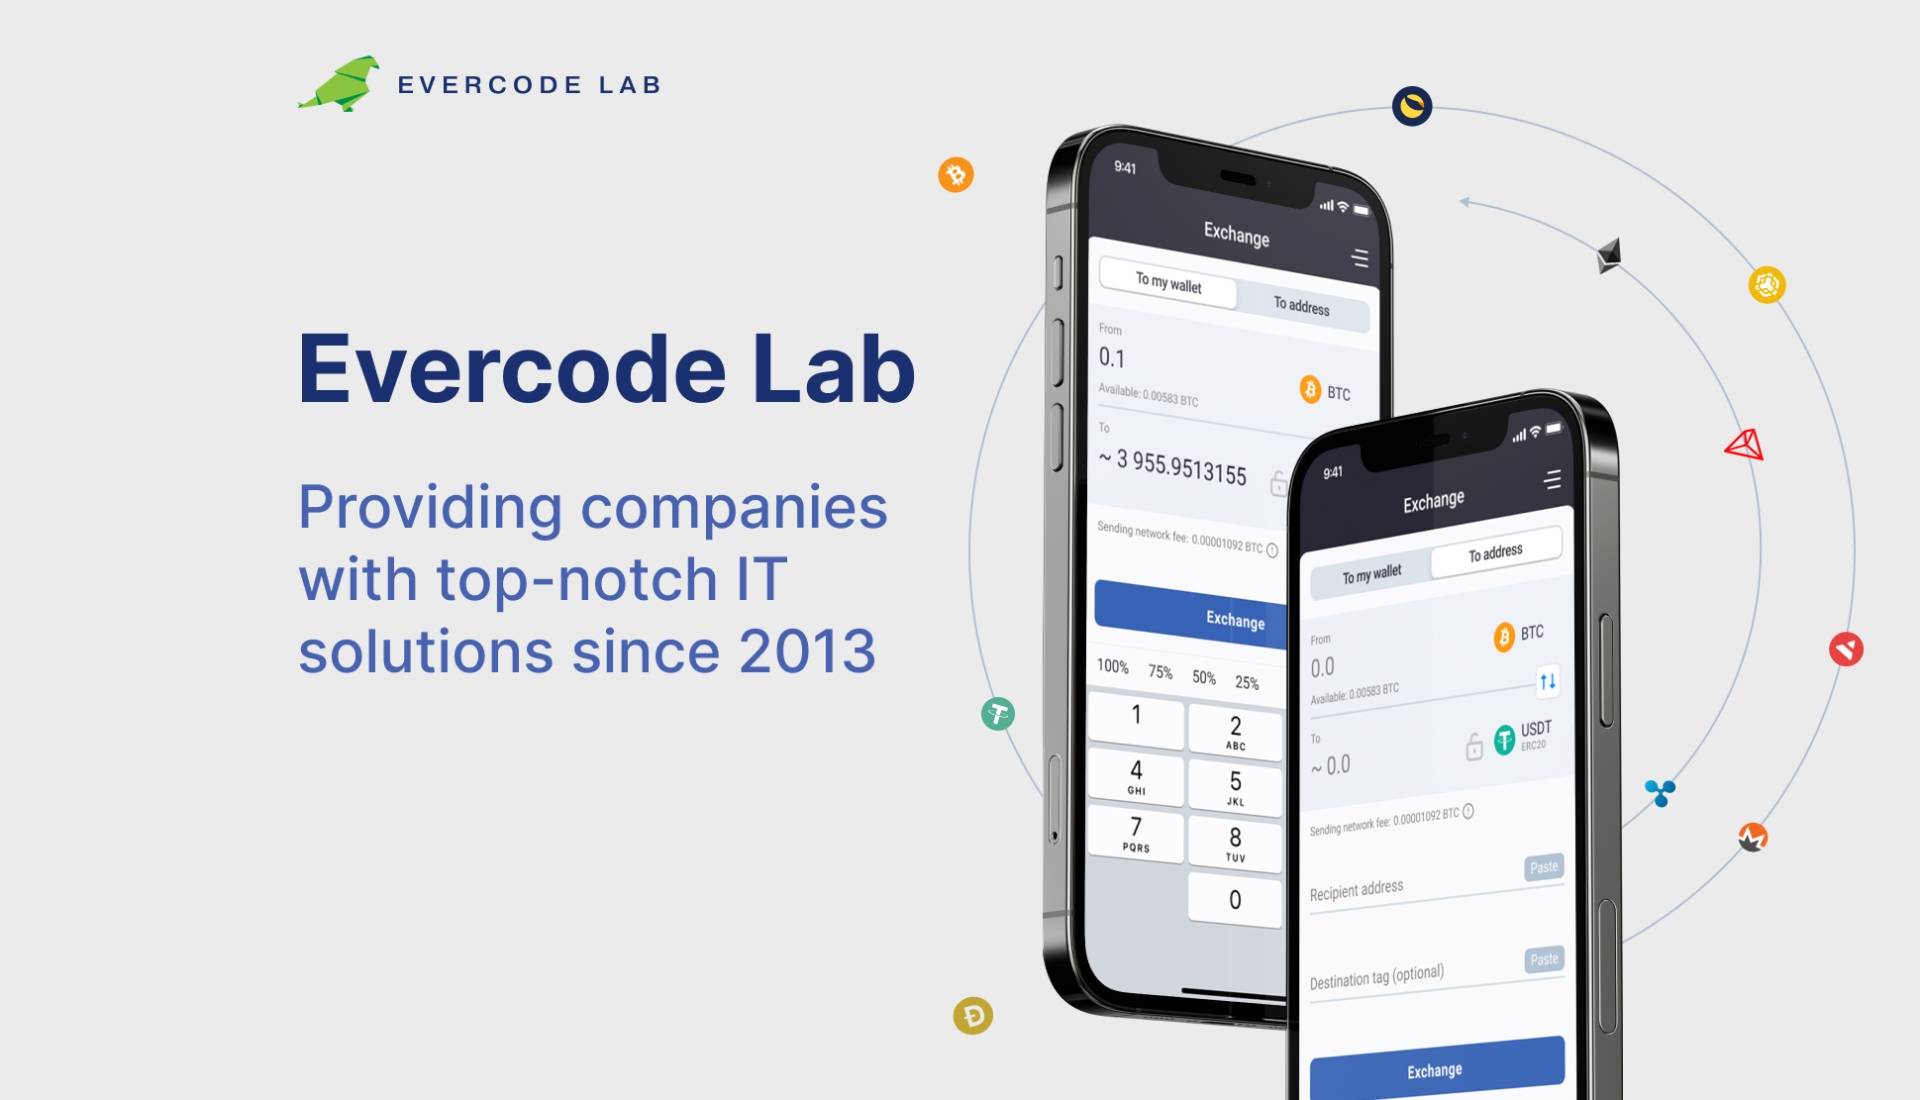 Evercode Lab